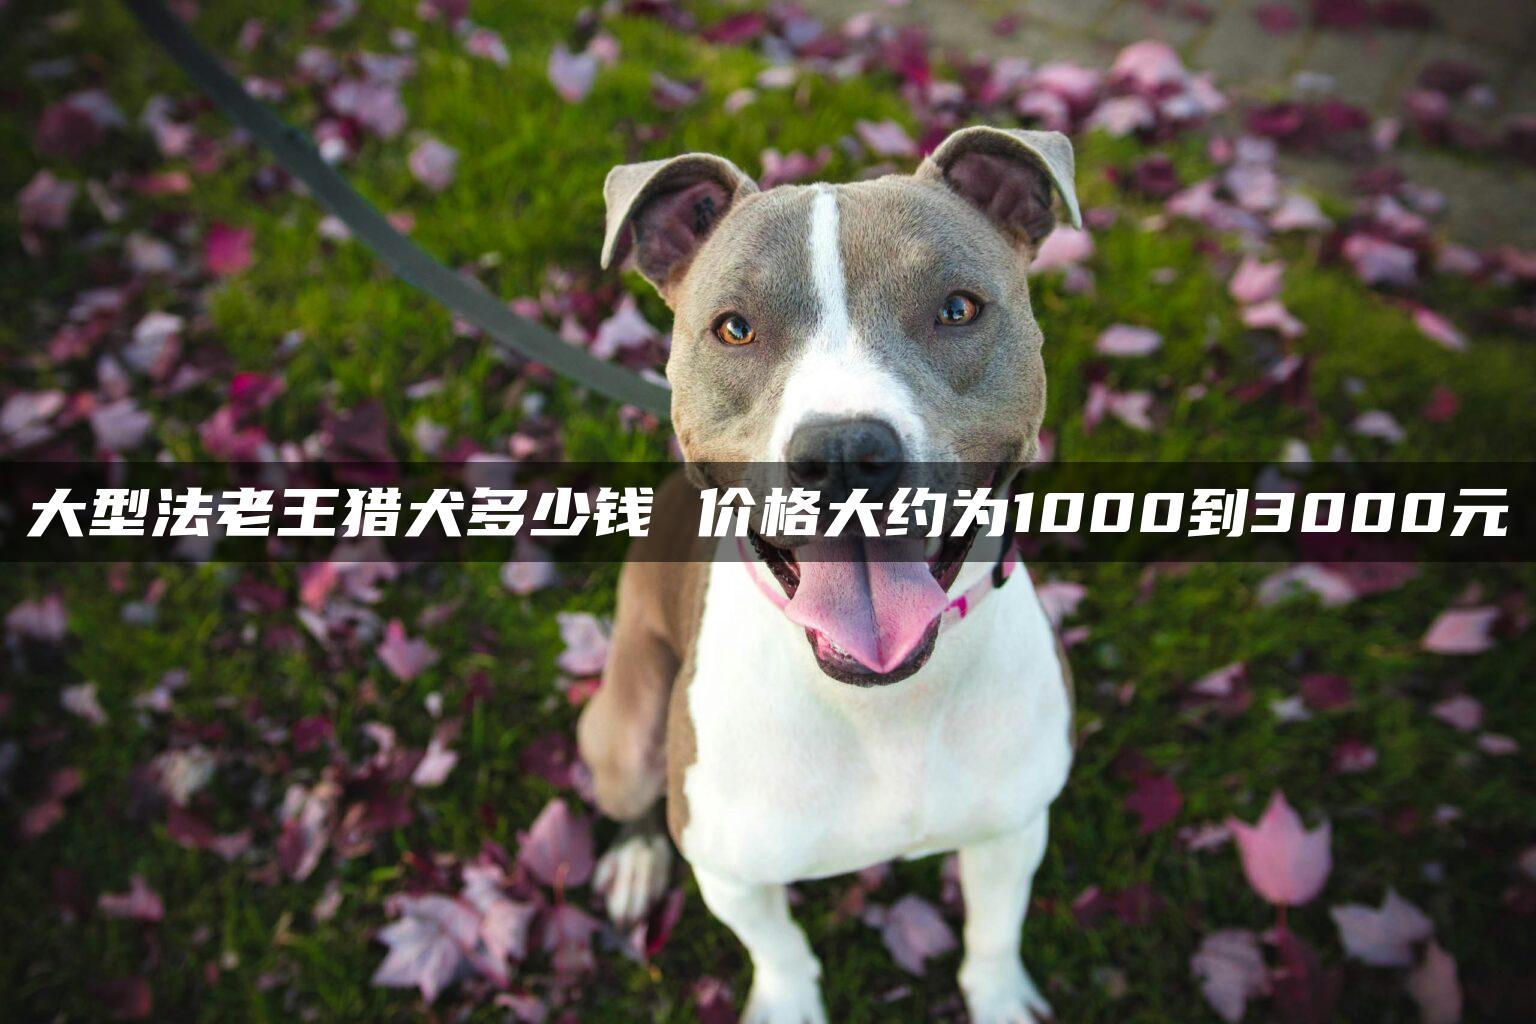 大型法老王猎犬多少钱 价格大约为1000到3000元